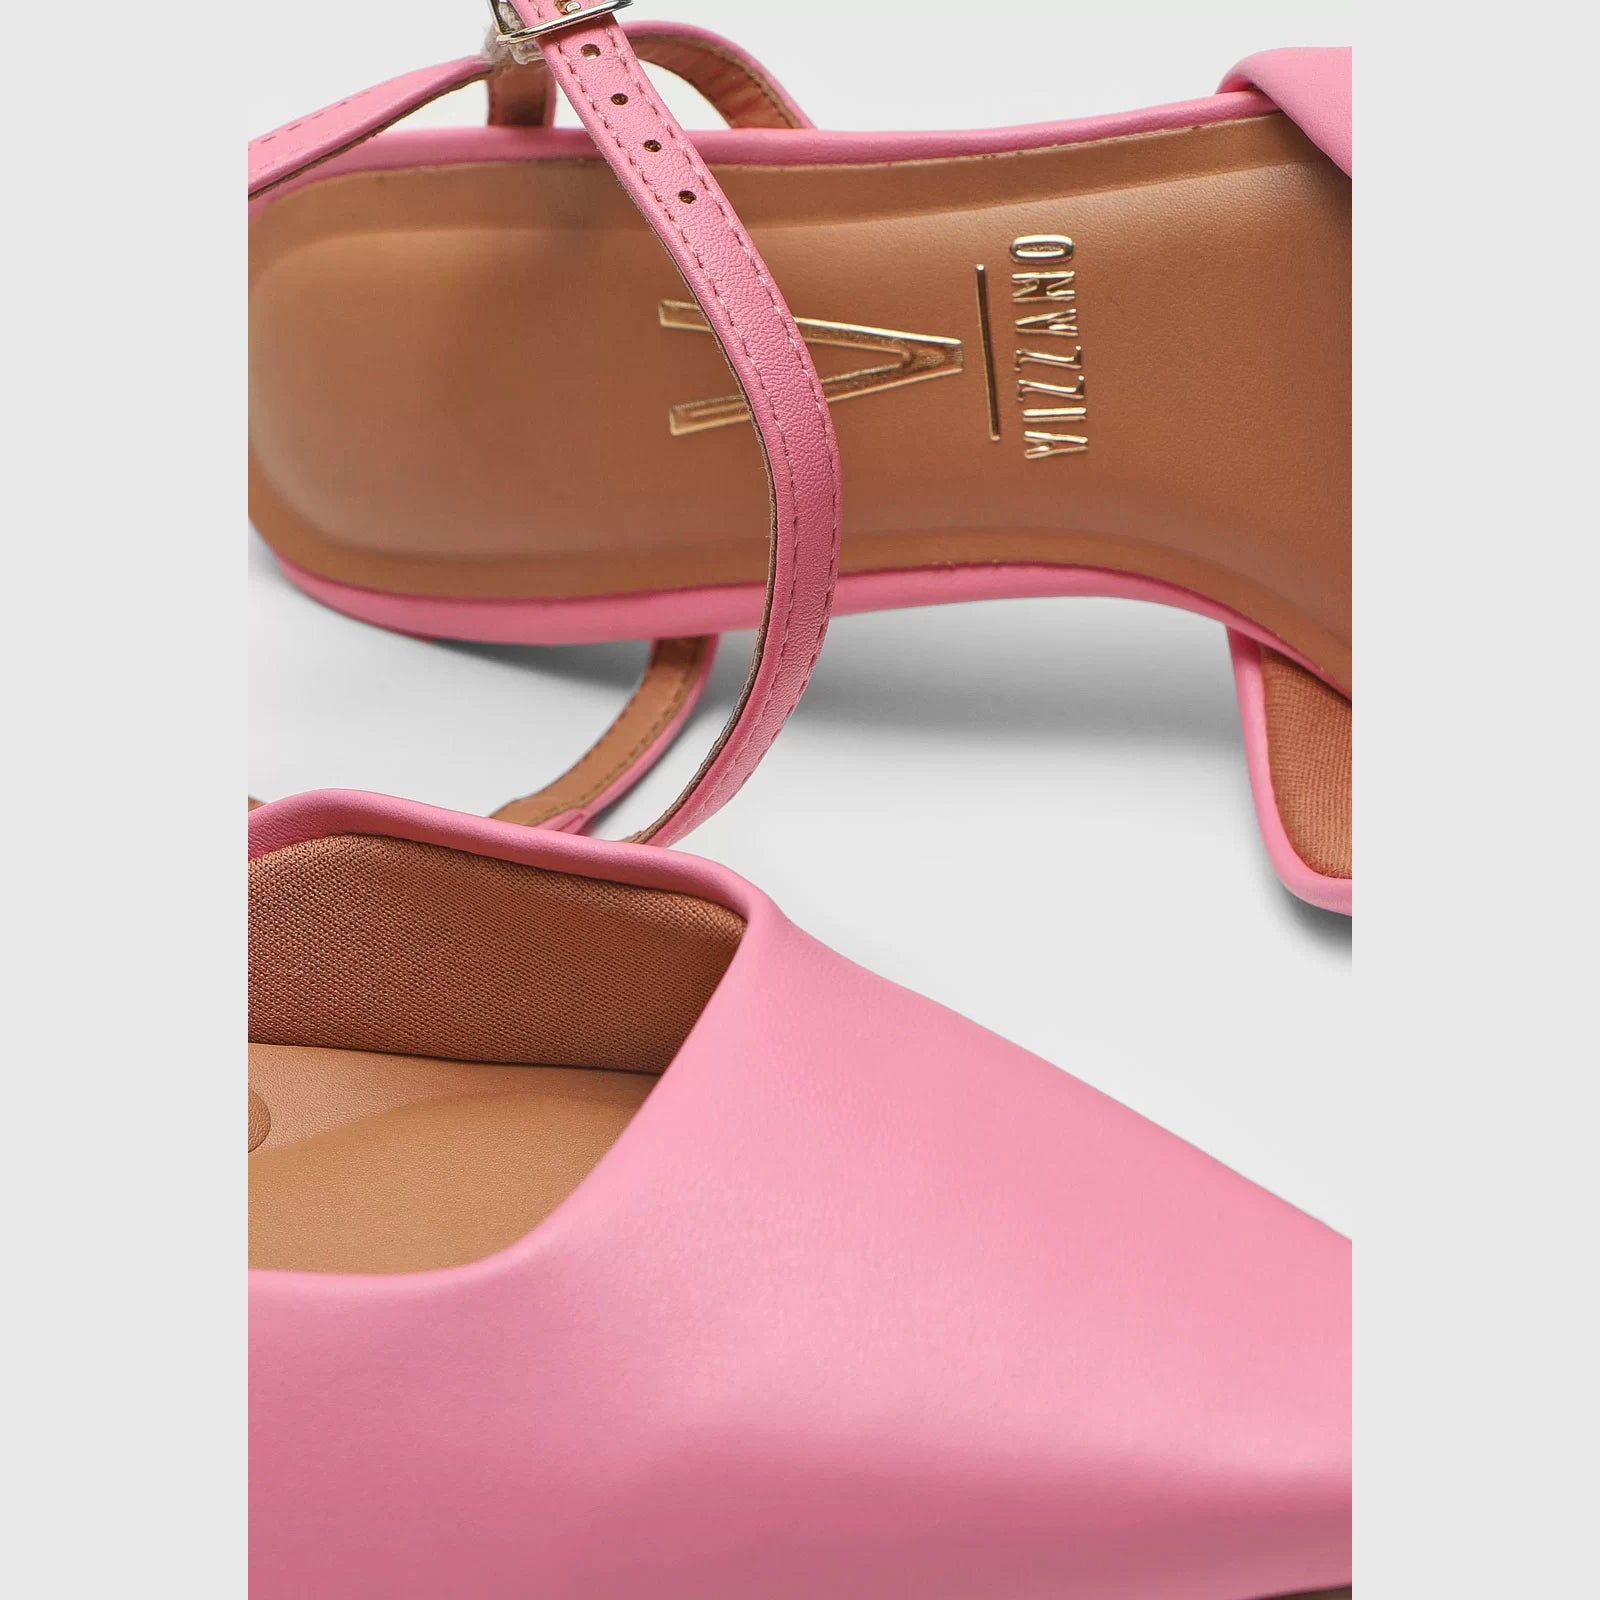 Vizzano 1365-105 Strappy Mid Heel Pump in Candy Pink Napa